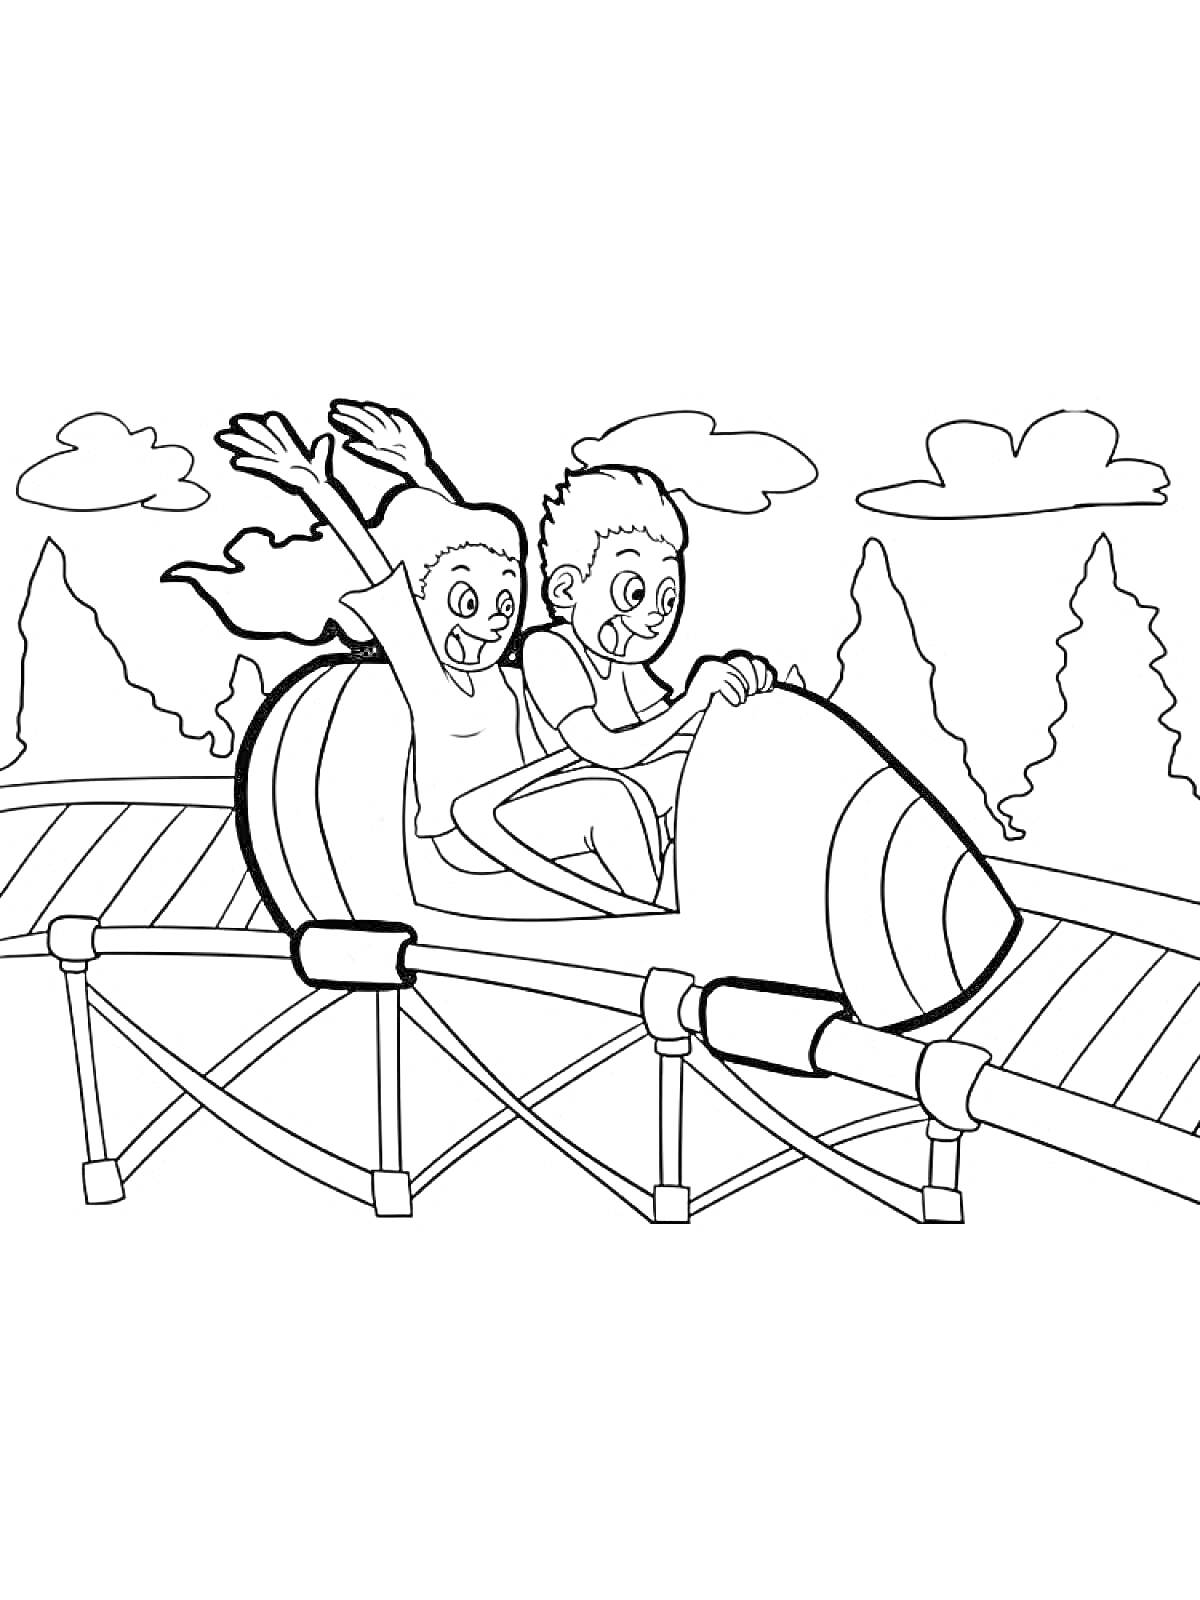 Раскраска Американские горки с двумя веселящимися людьми в вагончике, деревья на заднем плане и небо с облаками